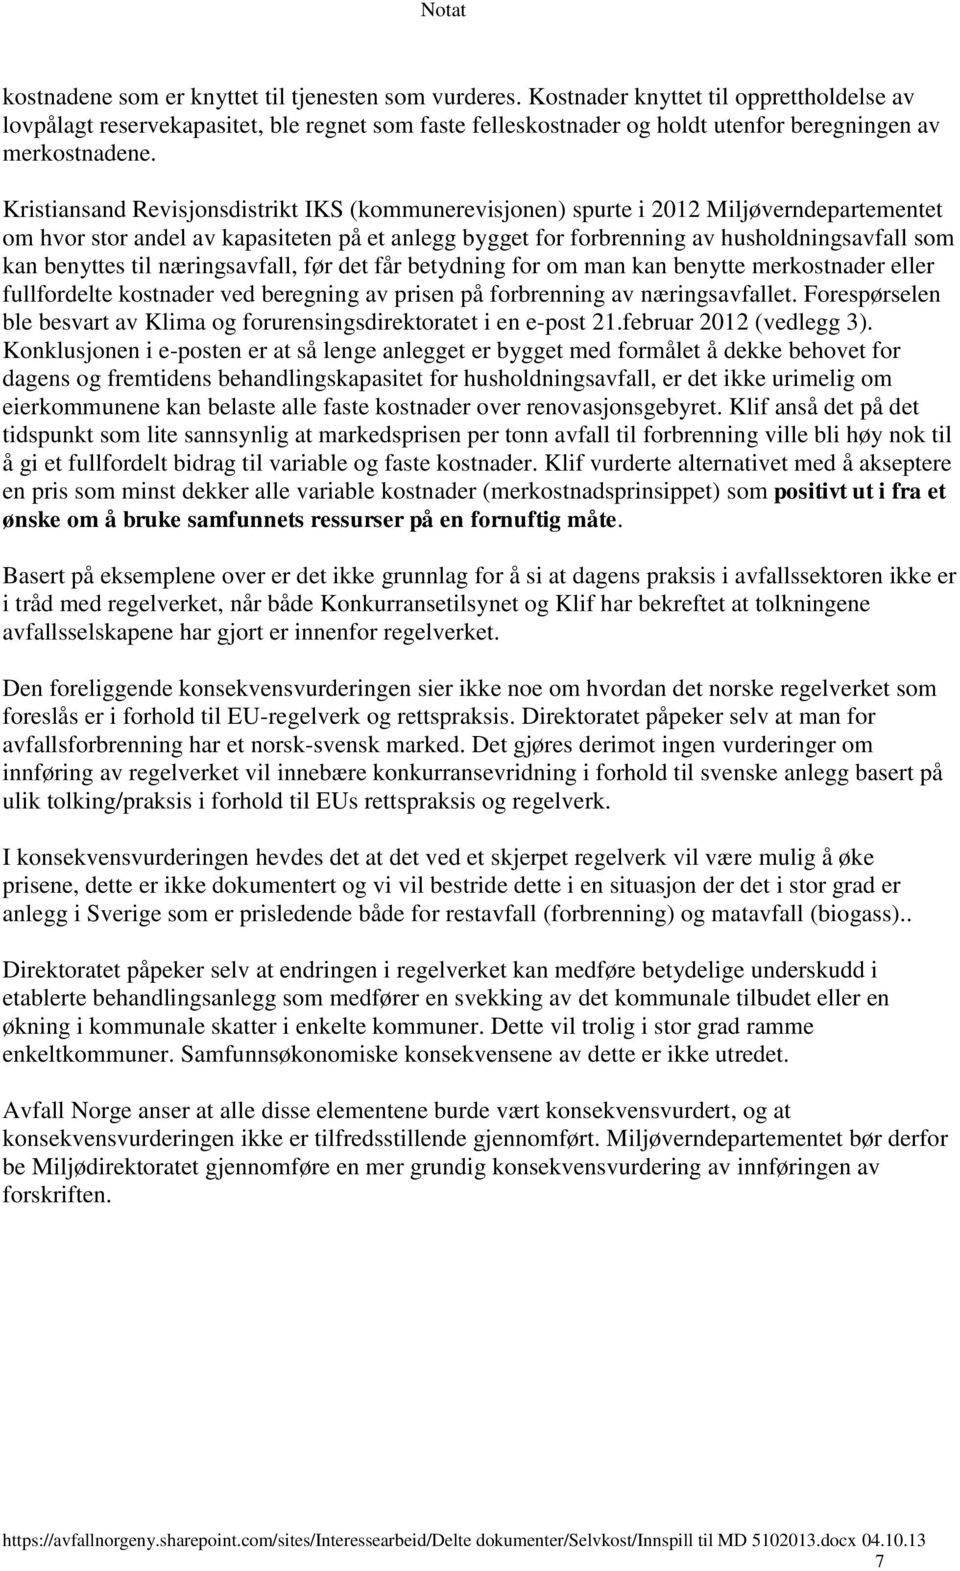 Kristiansand Revisjonsdistrikt IKS (kommunerevisjonen) spurte i 2012 Miljøverndepartementet om hvor stor andel av kapasiteten på et anlegg bygget for forbrenning av husholdningsavfall som kan